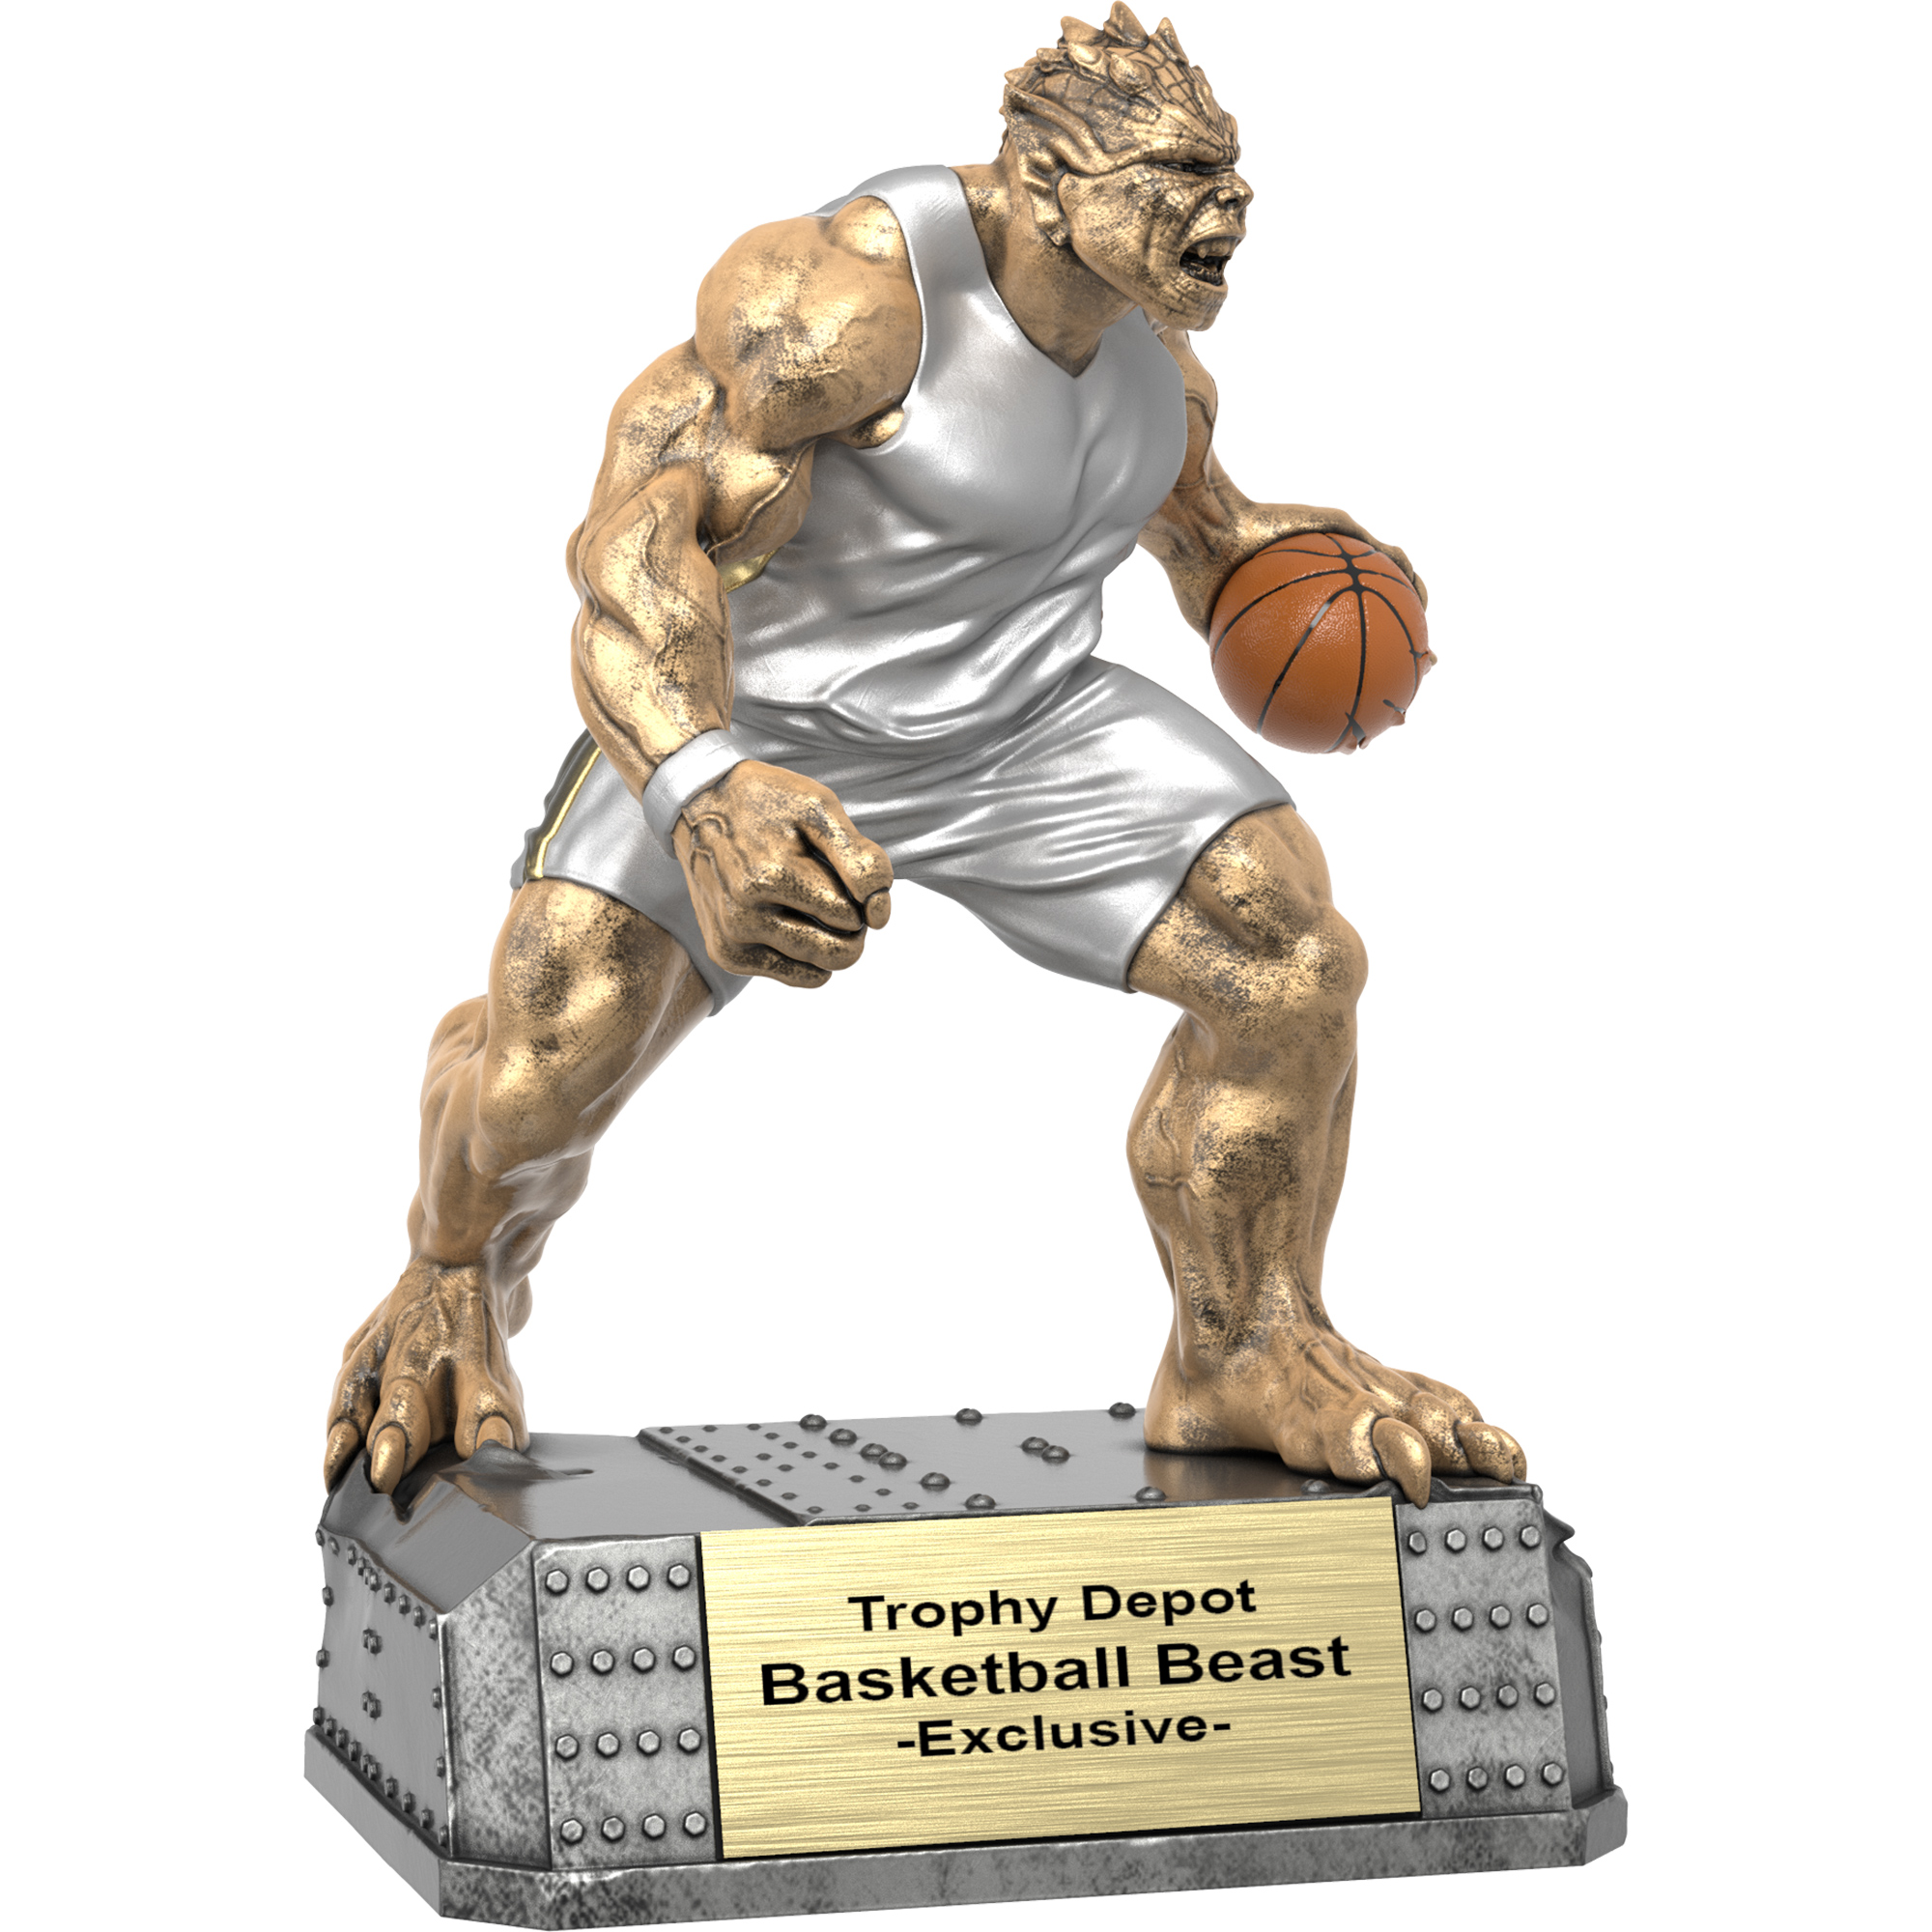 Basketball Beast Sculpture Trophy - 9.25 inch